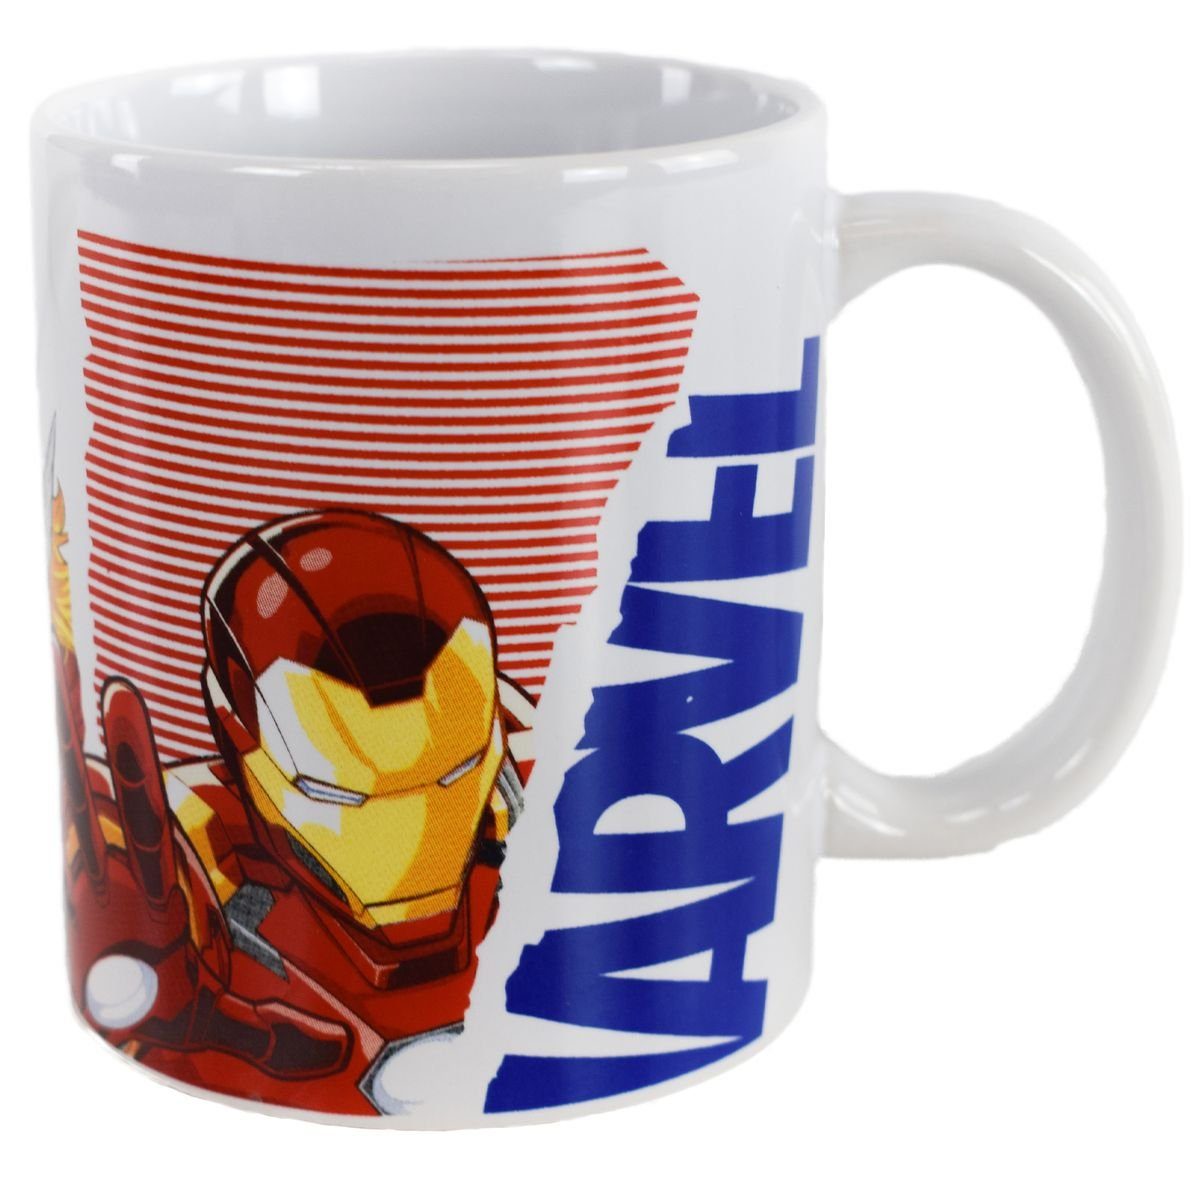 MARVEL Stor Tasse Tasse mit Avengers Motiv in Geschenkkarton ca. 325 ml Kaffeetasse, Keramik, authentisches Design